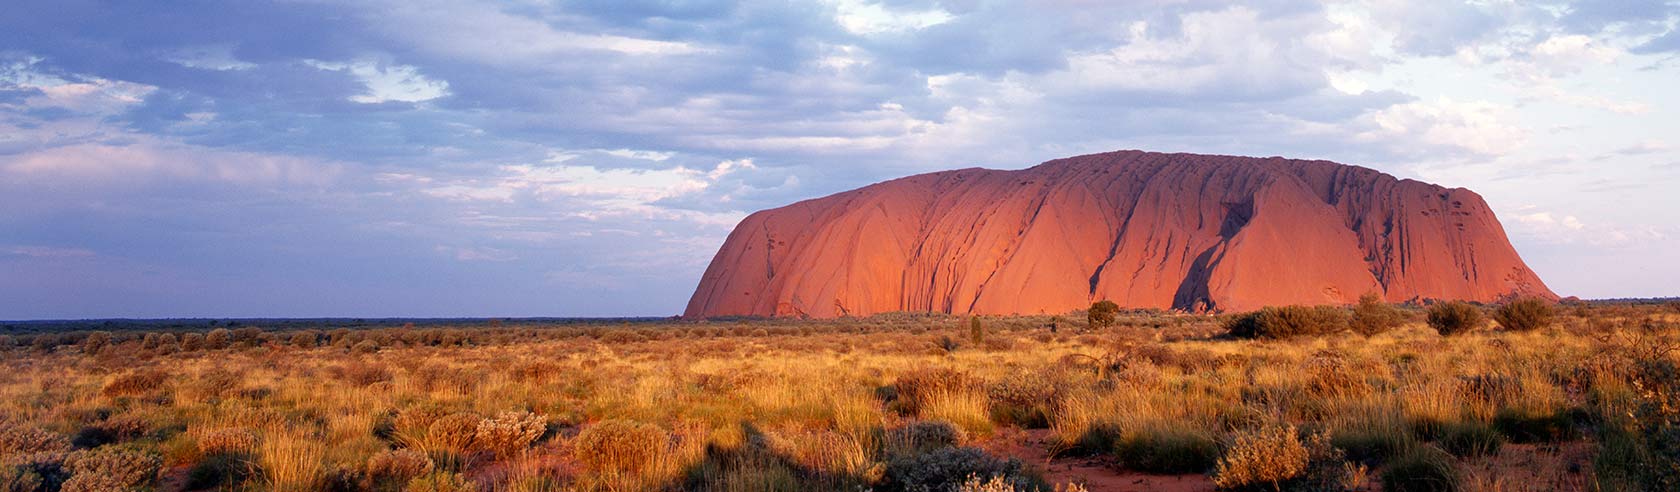 Uluru Landscape